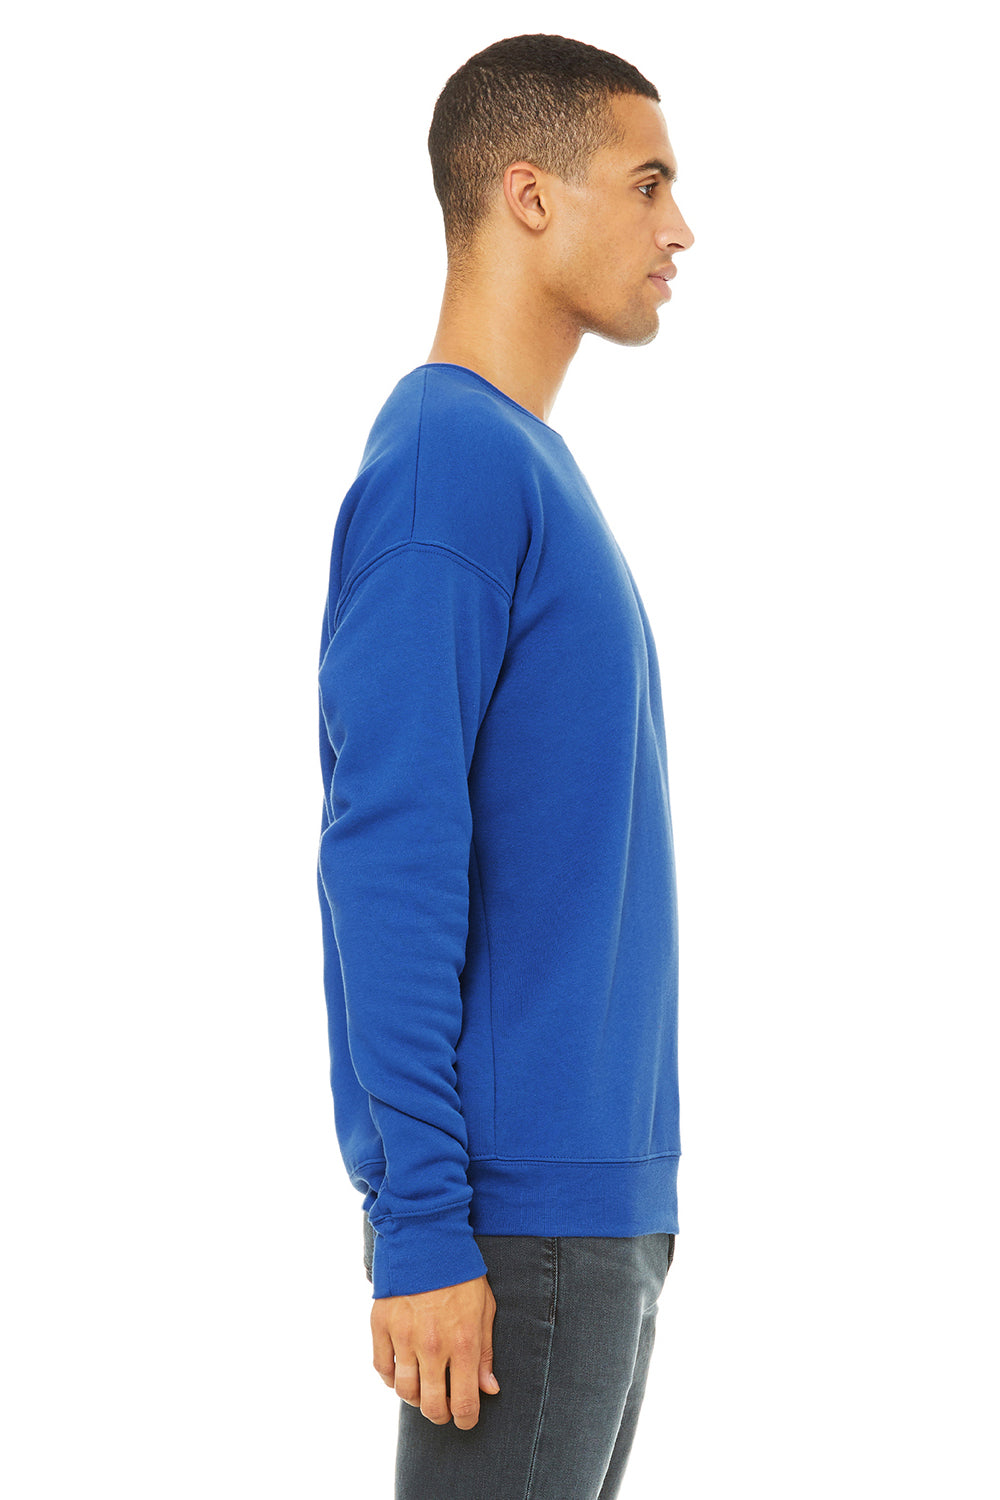 Bella + Canvas BC3945/3945 Mens Fleece Crewneck Sweatshirt True Royal Blue Model Side